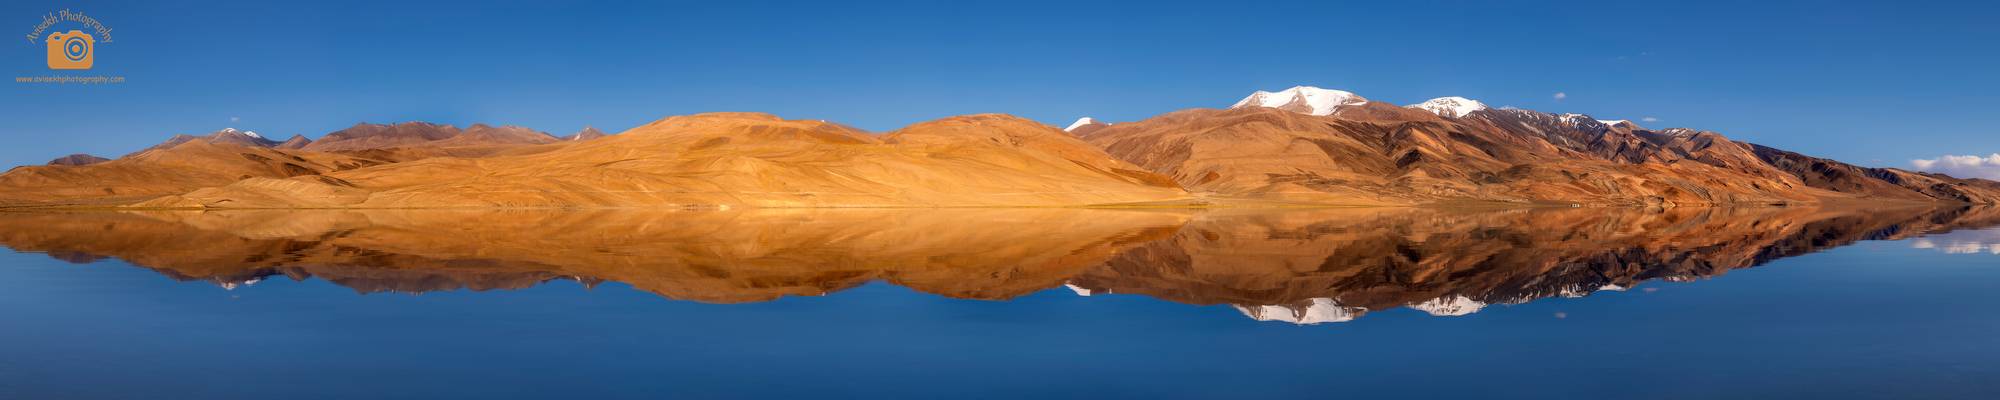 Tso Moriri @ Ladakh, India